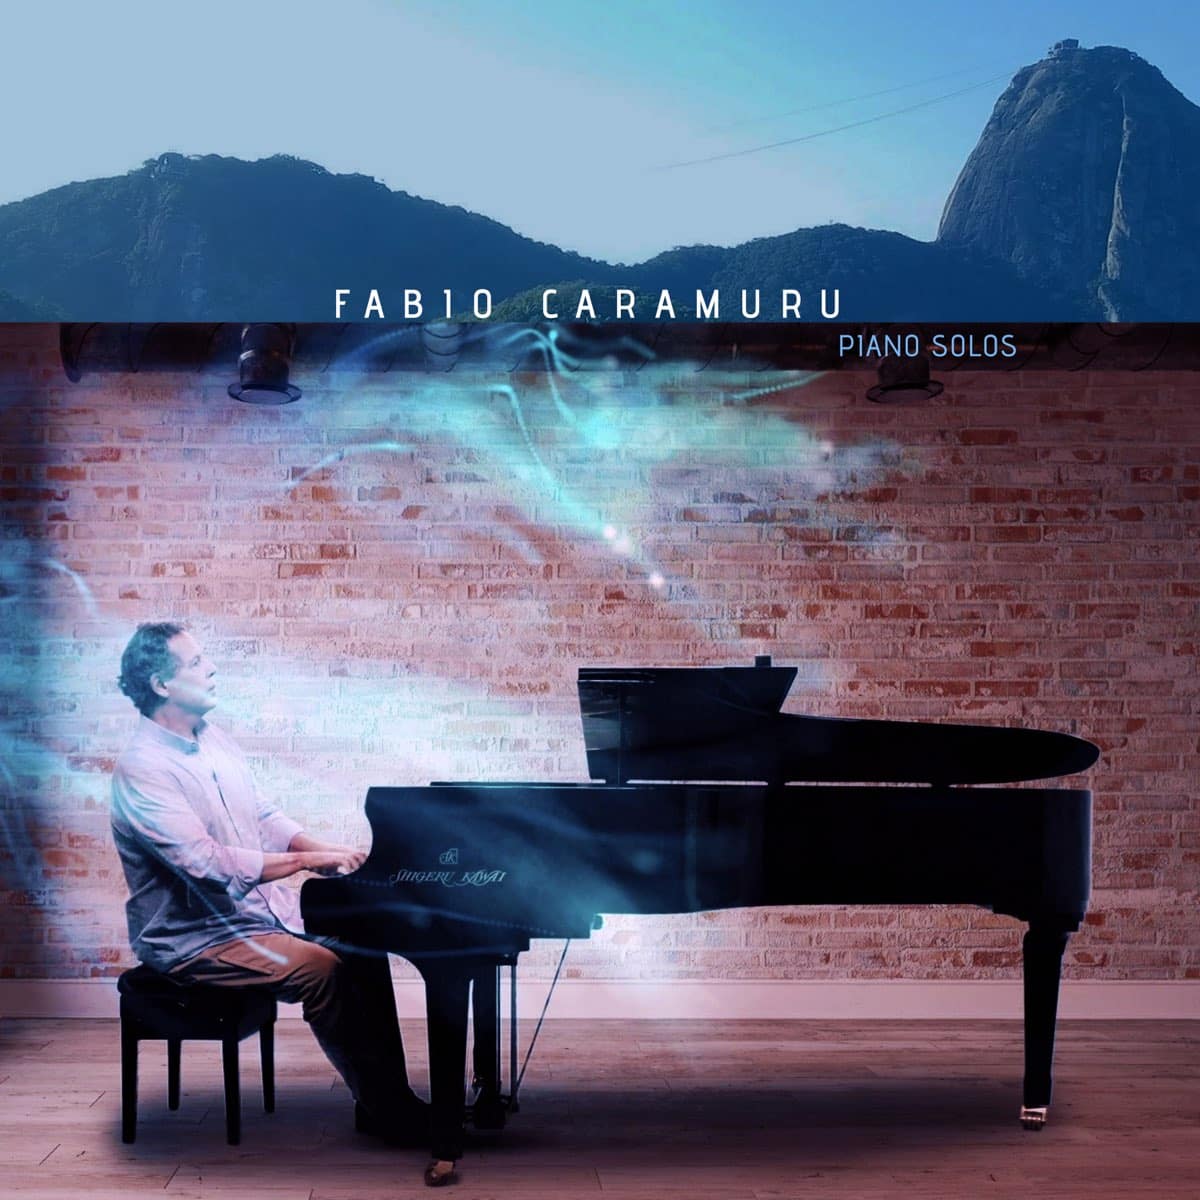 revistaprosaversoearte.com - 'Piano Solos', álbum do pianista e compositor Fabio Caramuru